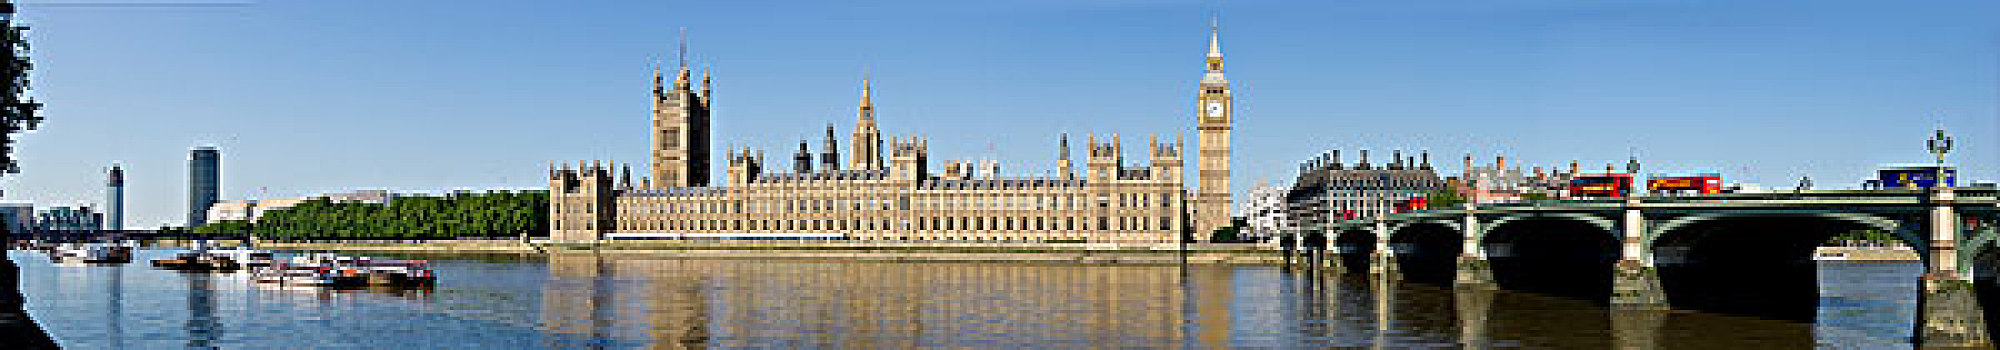 议会大厦,大本钟,威斯敏斯特,伦敦,英格兰,英国,欧洲